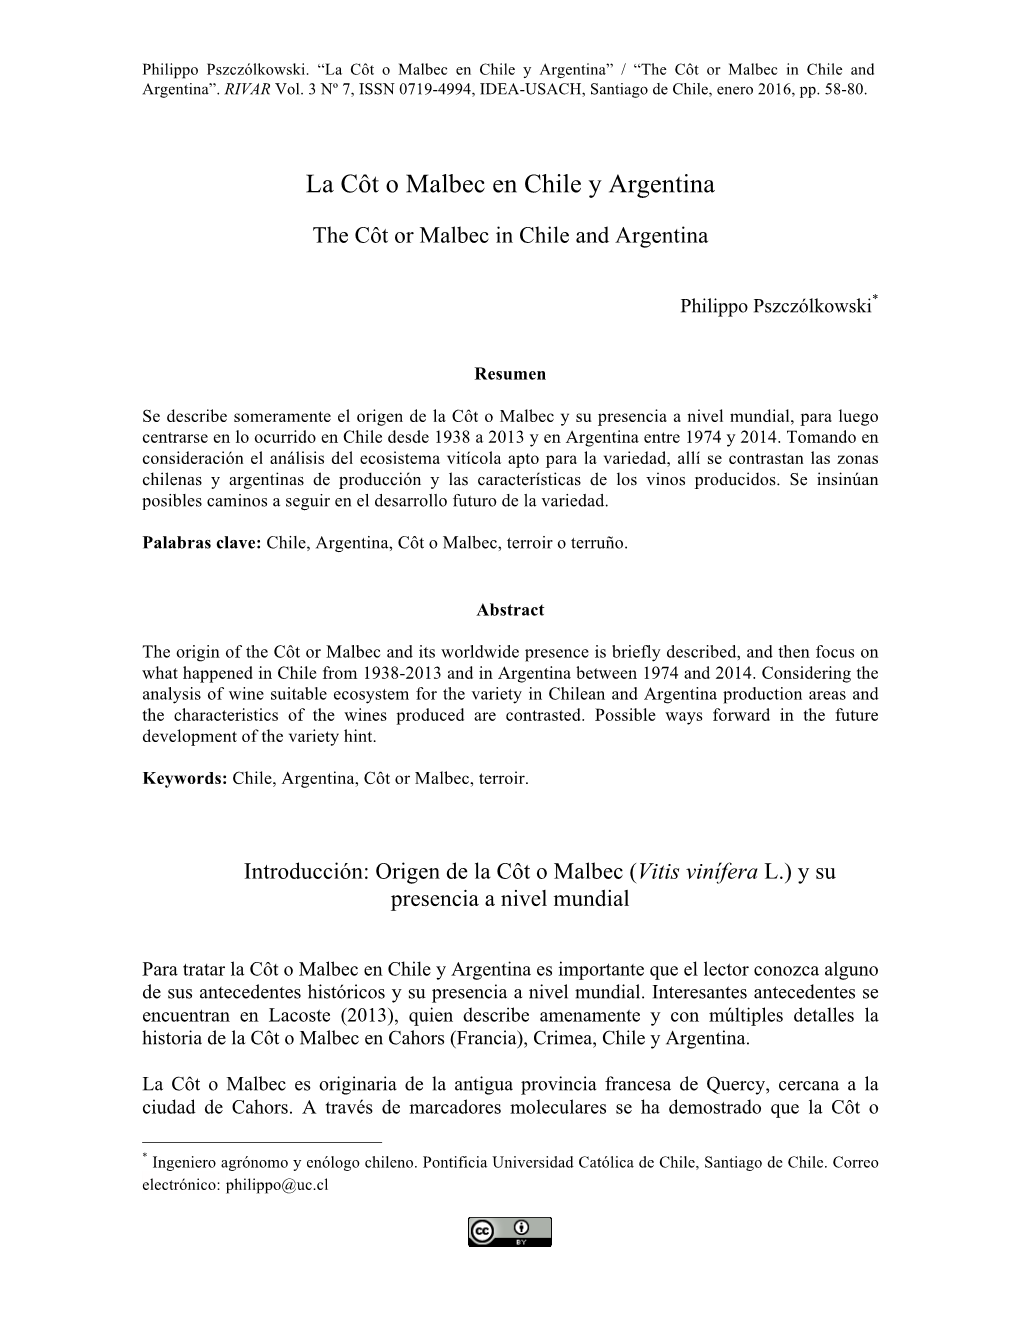 La Côt O Malbec En Chile Y Argentina” / “The Côt Or Malbec in Chile and Argentina”